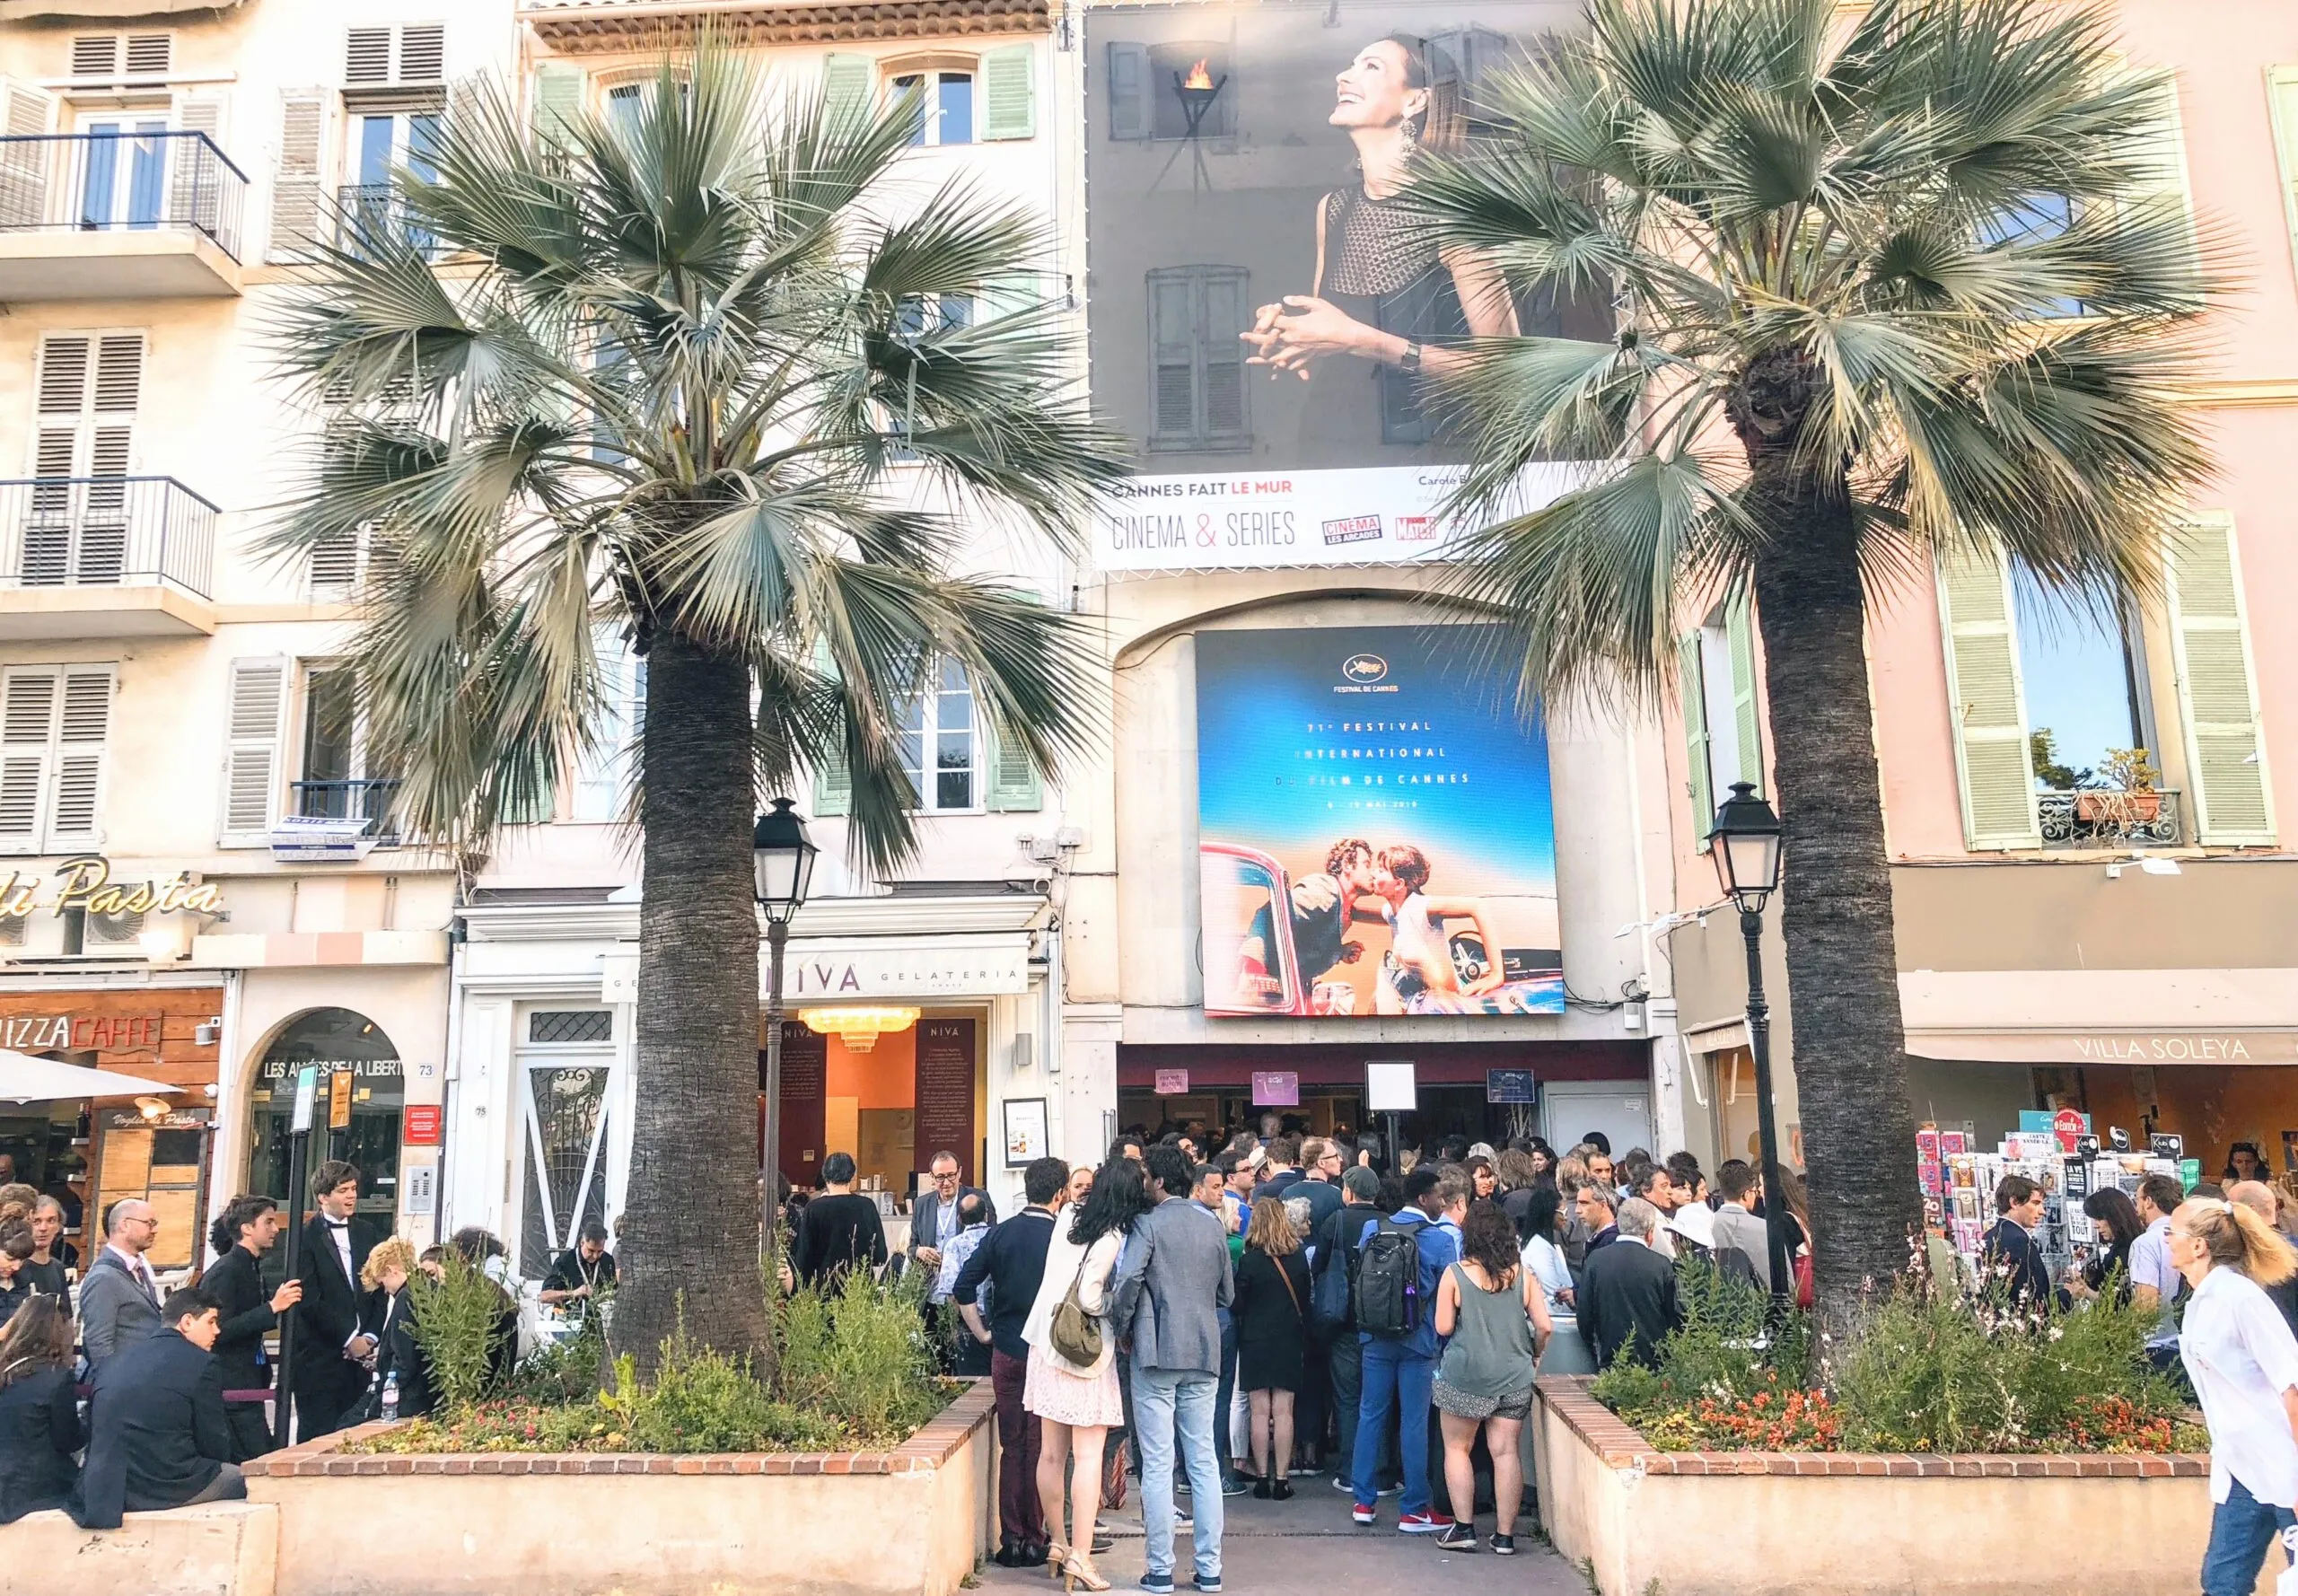 I migliori posti a Cannes per gli amanti del cinema - festival del cinema di cannes ridimensionato